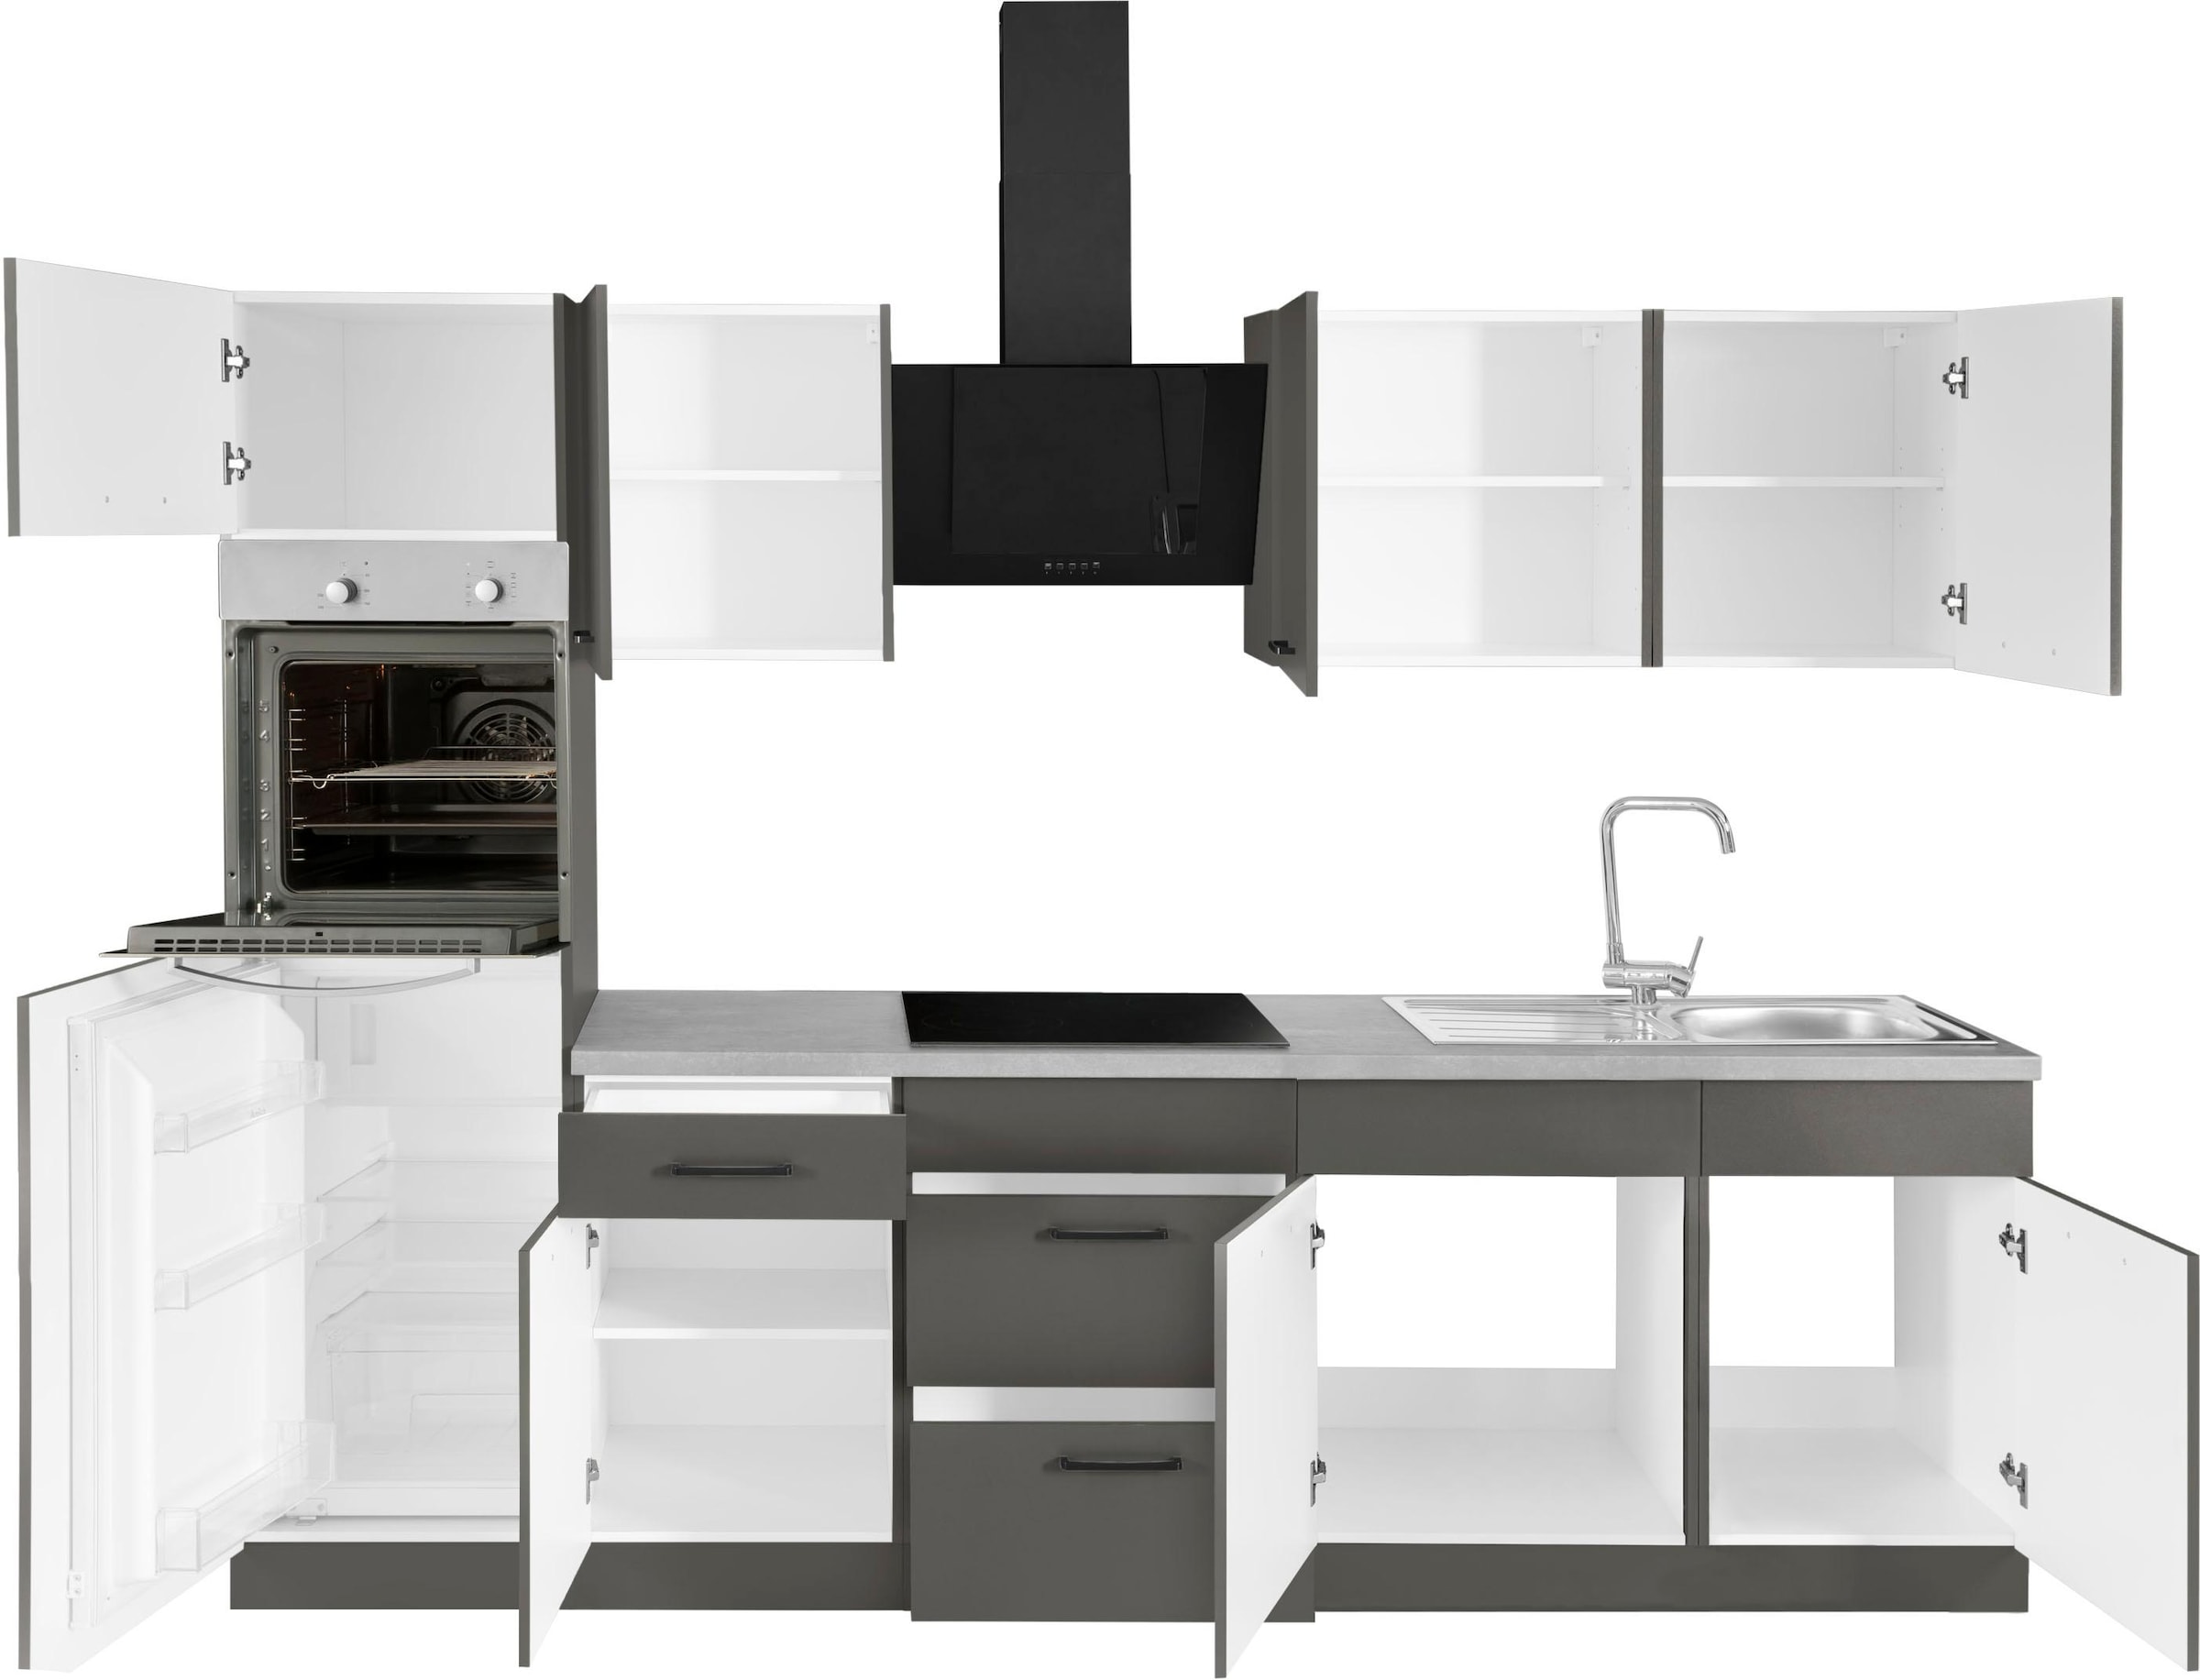 wiho Küchen Küchenzeile »Esbo«, ohne E-Geräte, Breite 280 cm kaufen